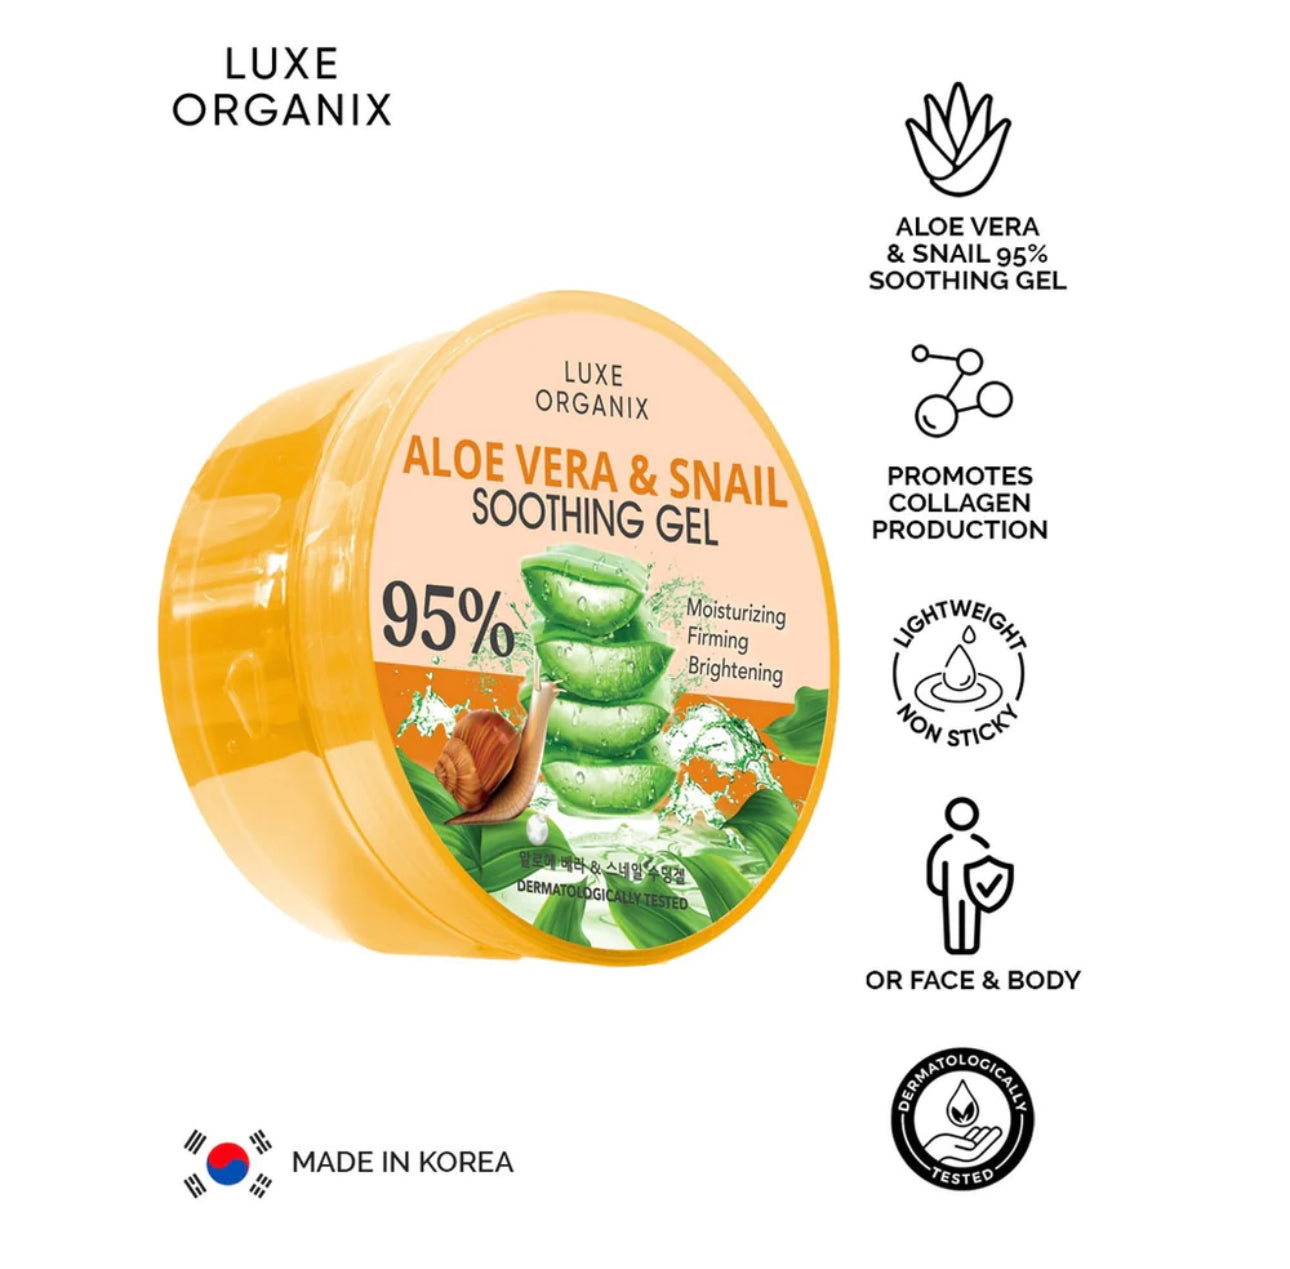 Luxe Organix Aloe Vera & Snail Soothing Gel